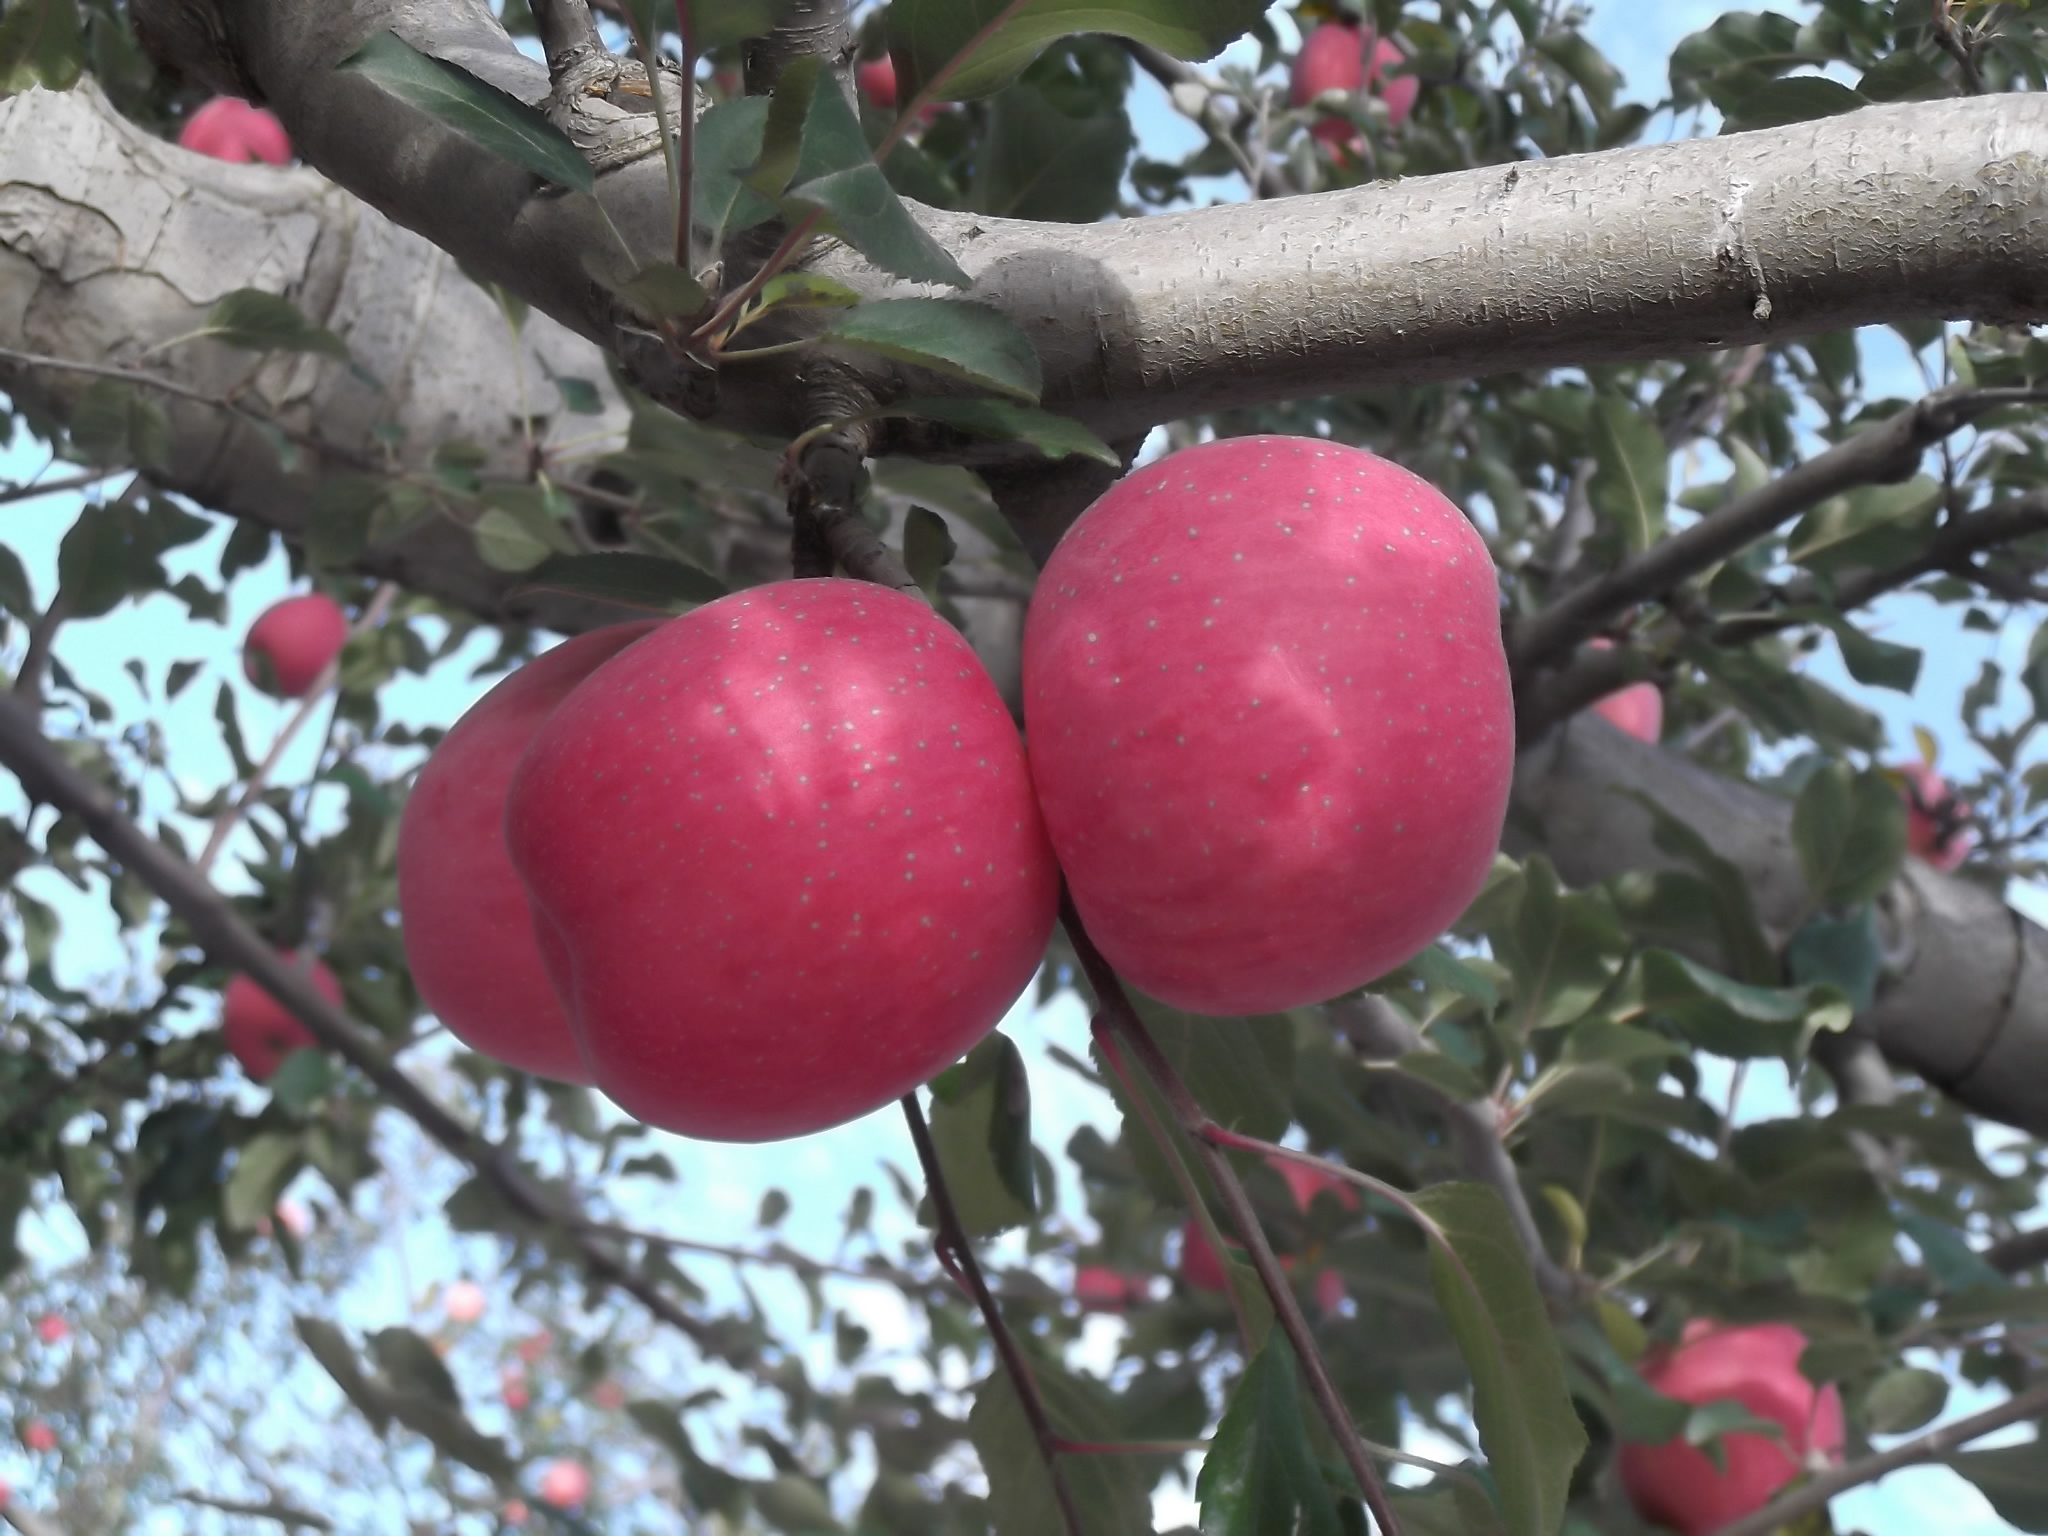 洛川苹果 红富士 苹果行情 水果 陕西洛川绿色苹果供应  大量优质一级红富士